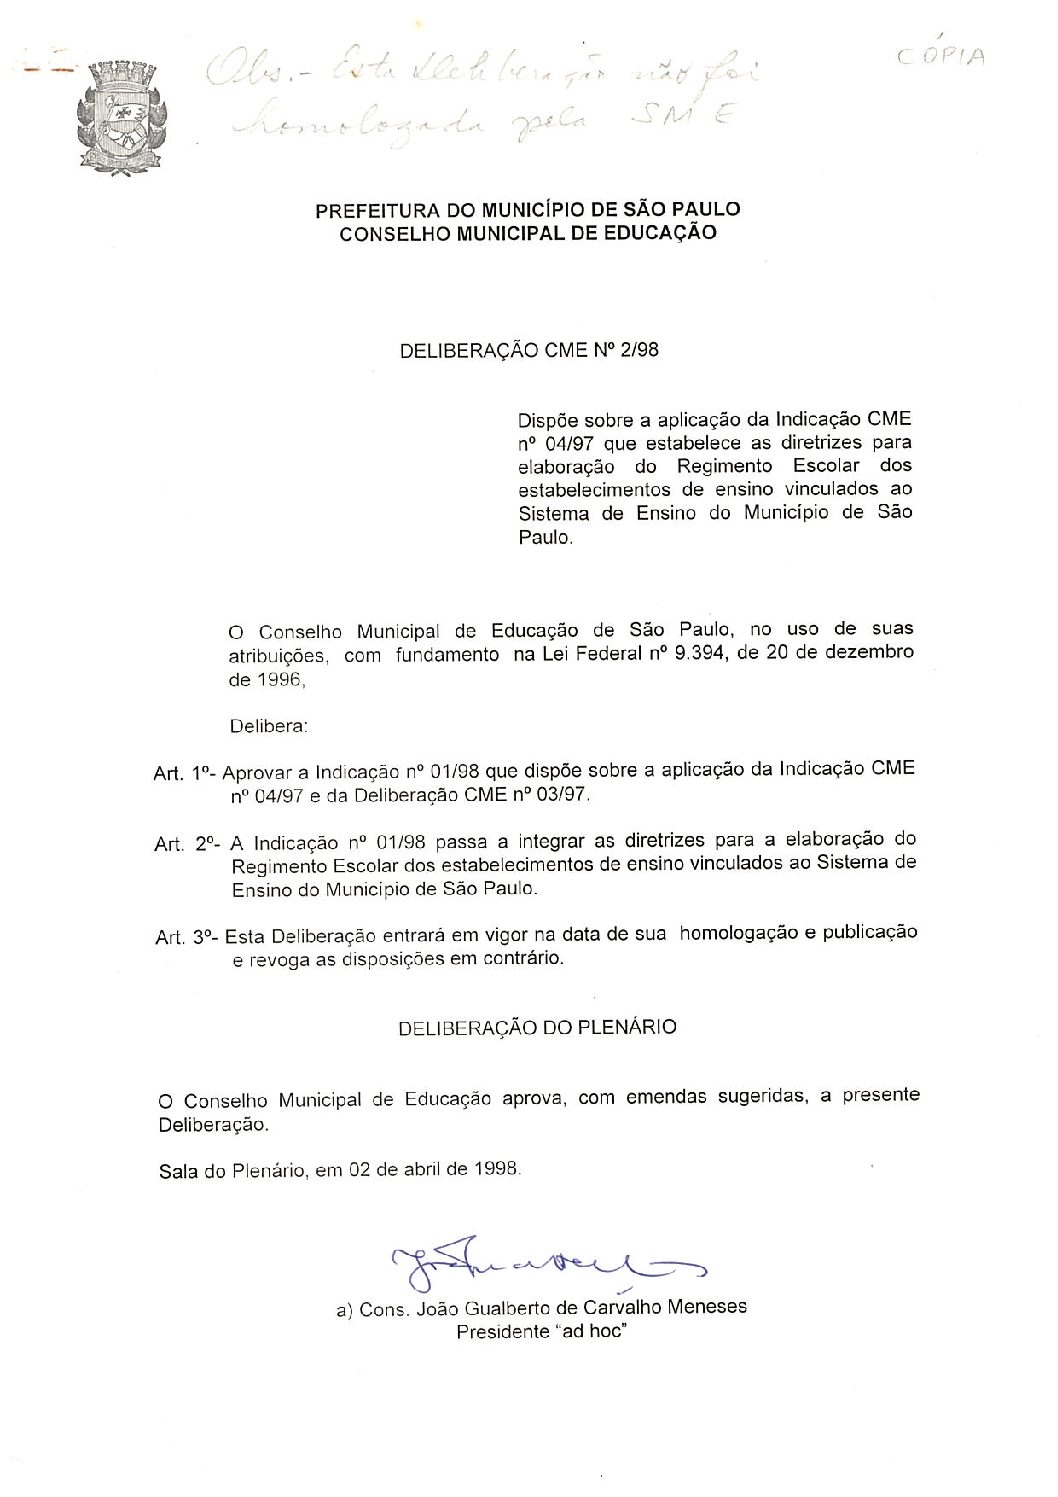 Deliberação CME nº 02/1998 - Dispõe sobre a aplicação da Indicação CME nº 04/1997 que estabelece as diretrizes para elaboração do Regimento Escolar dos estabelecimentos de ensino vinculados ao Sistema de Ensino do Município de São Paulo